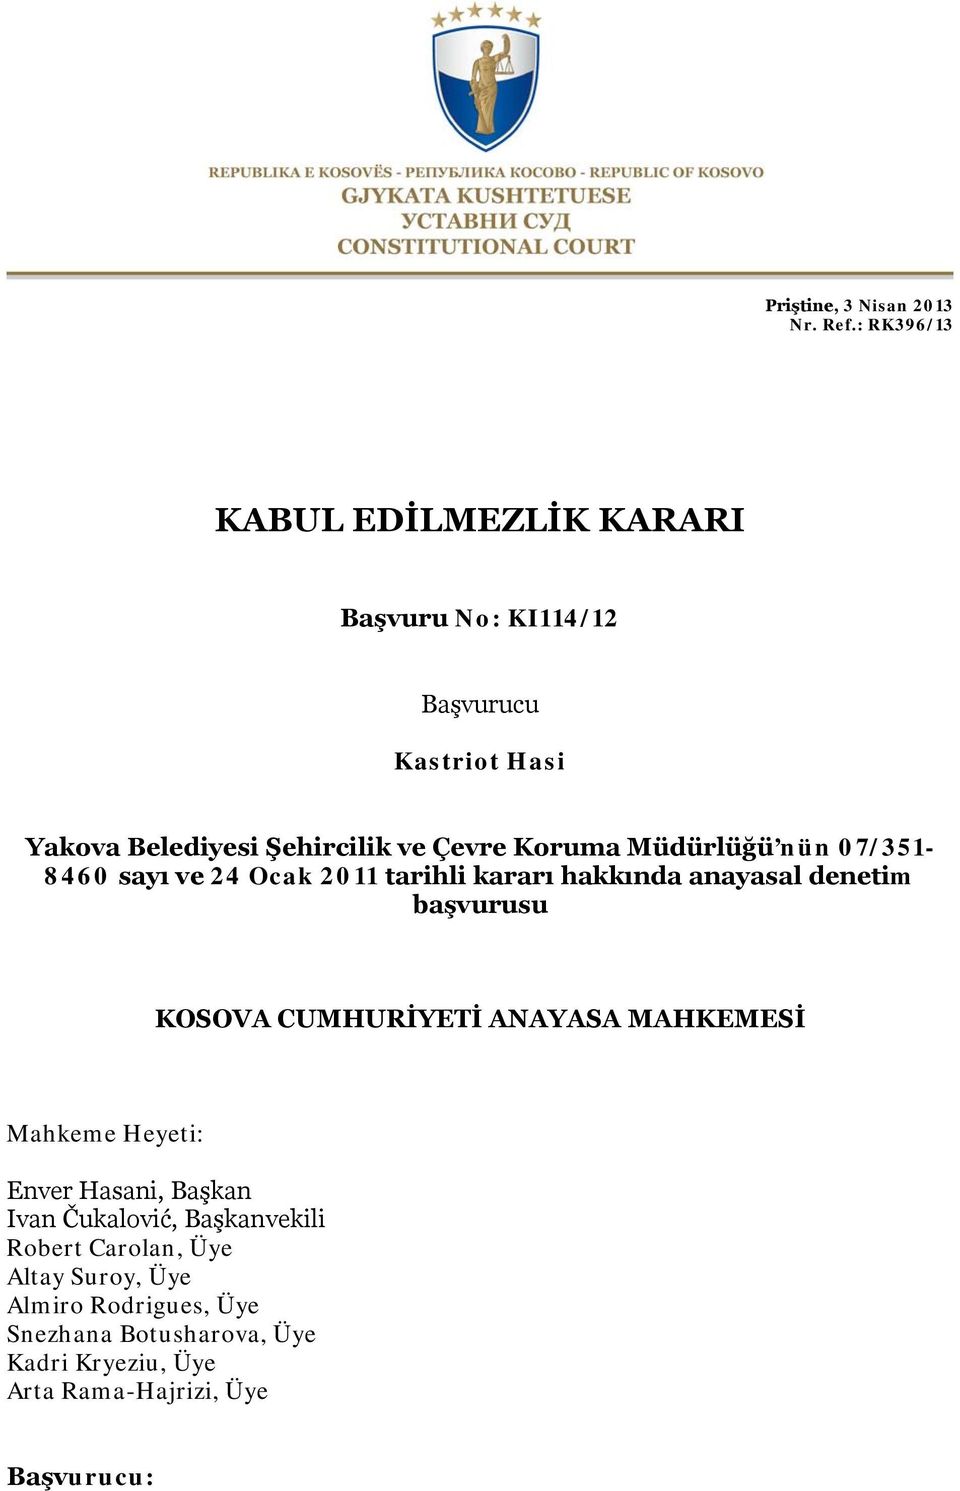 Koruma Müdürlüğü nün 07/351-8460 sayı ve 24 Ocak 2011 tarihli kararı hakkında anayasal denetim başvurusu KOSOVA CUMHURİYETİ